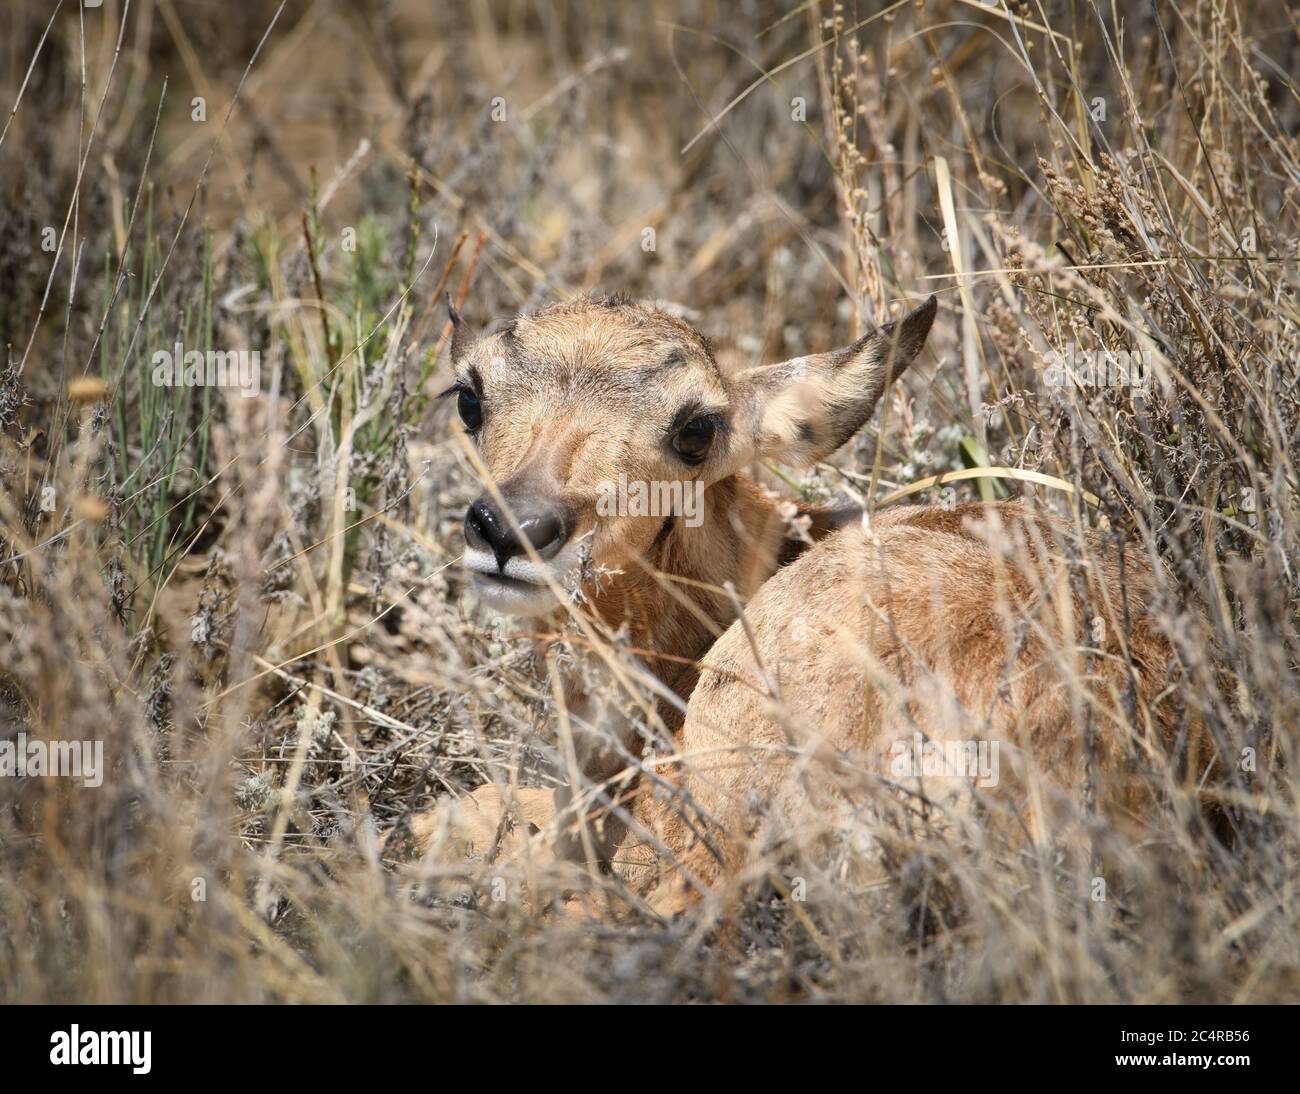 Neonato pronghorn pegno antilope nascosto nell'erba per occultamento da predatori. Foto Stock